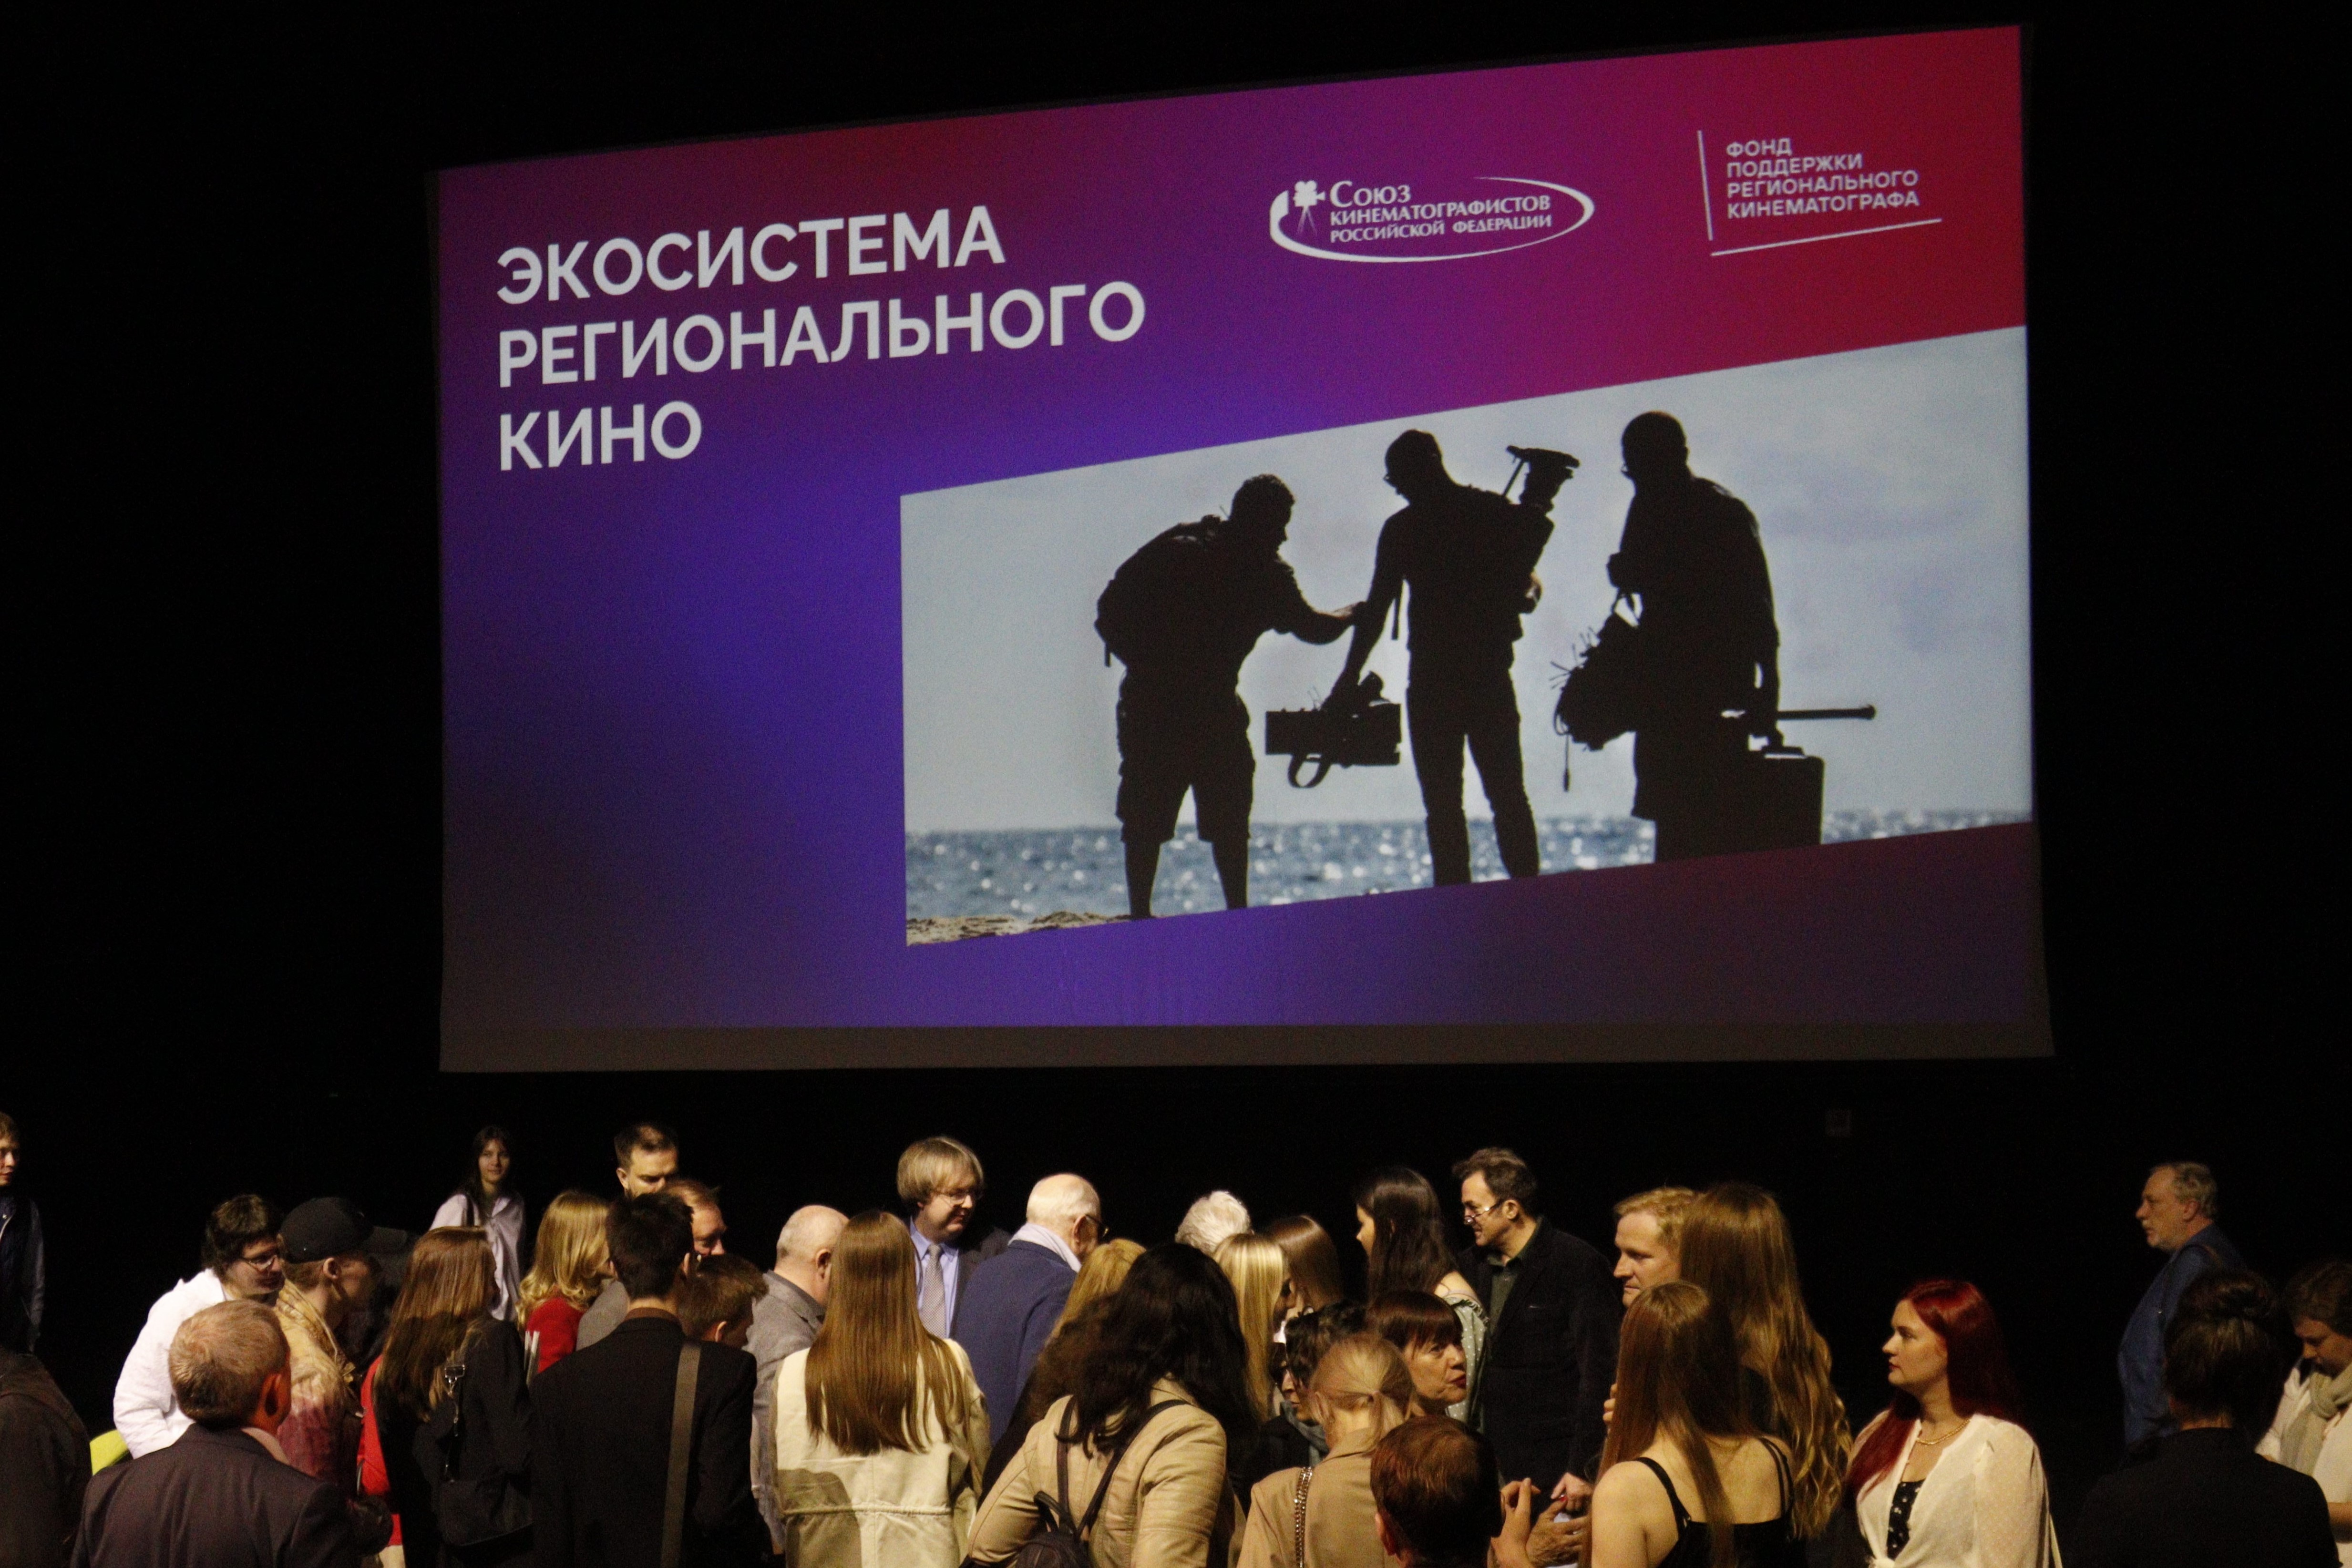 Калининград подписал соглашение о проведении Всероссийского кинофорума регионального кино в 2023 году